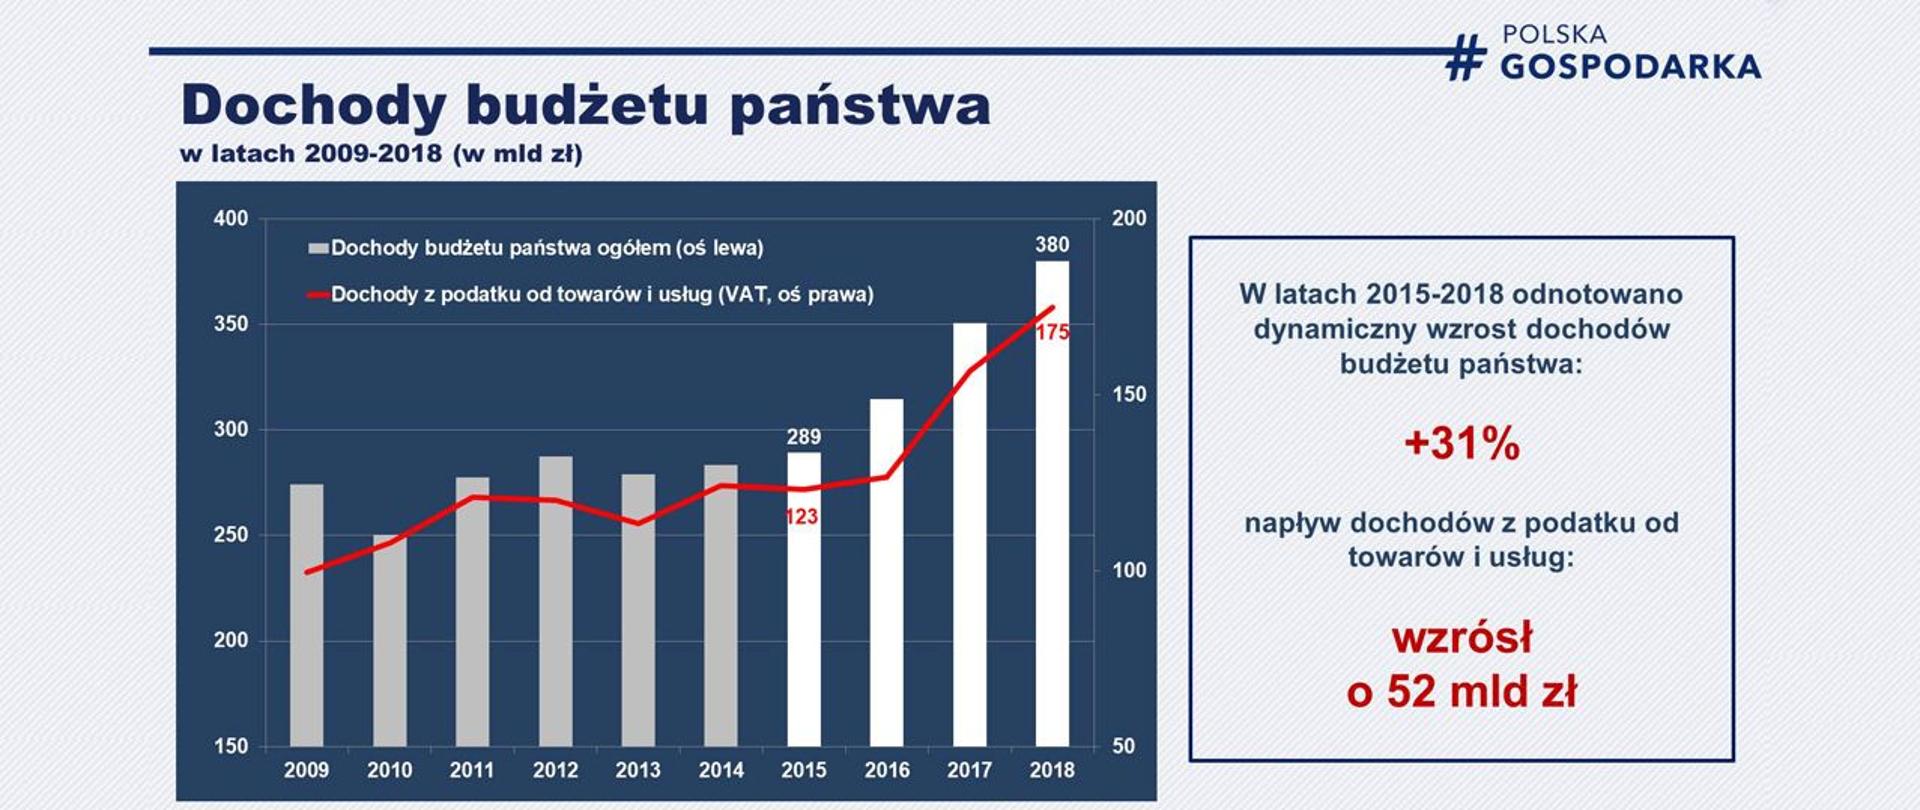 wykres przedstawia dochody budżetu państwa ogółem, w tym dochody z VAT, w ltach 2009-2018